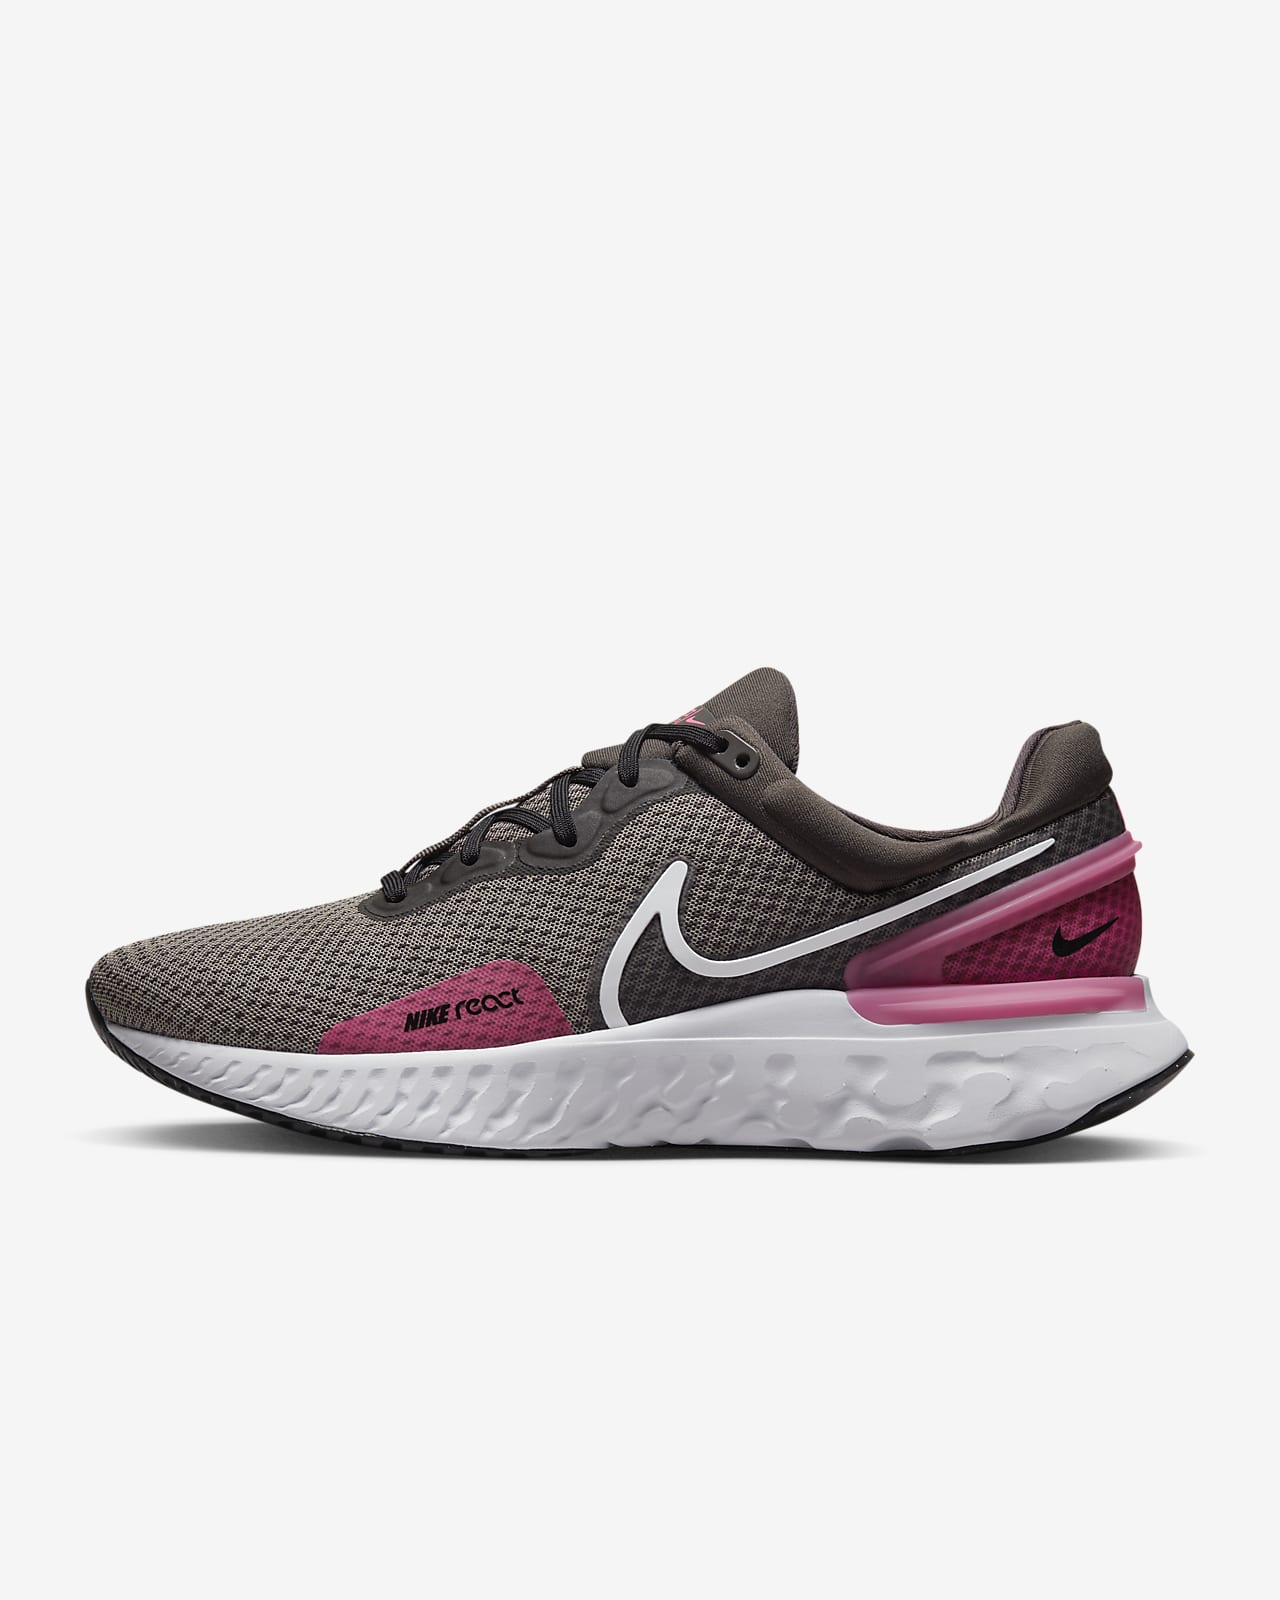 Ανδρικά παπούτσια για τρέξιμο σε δρόμο Nike React Miler 3